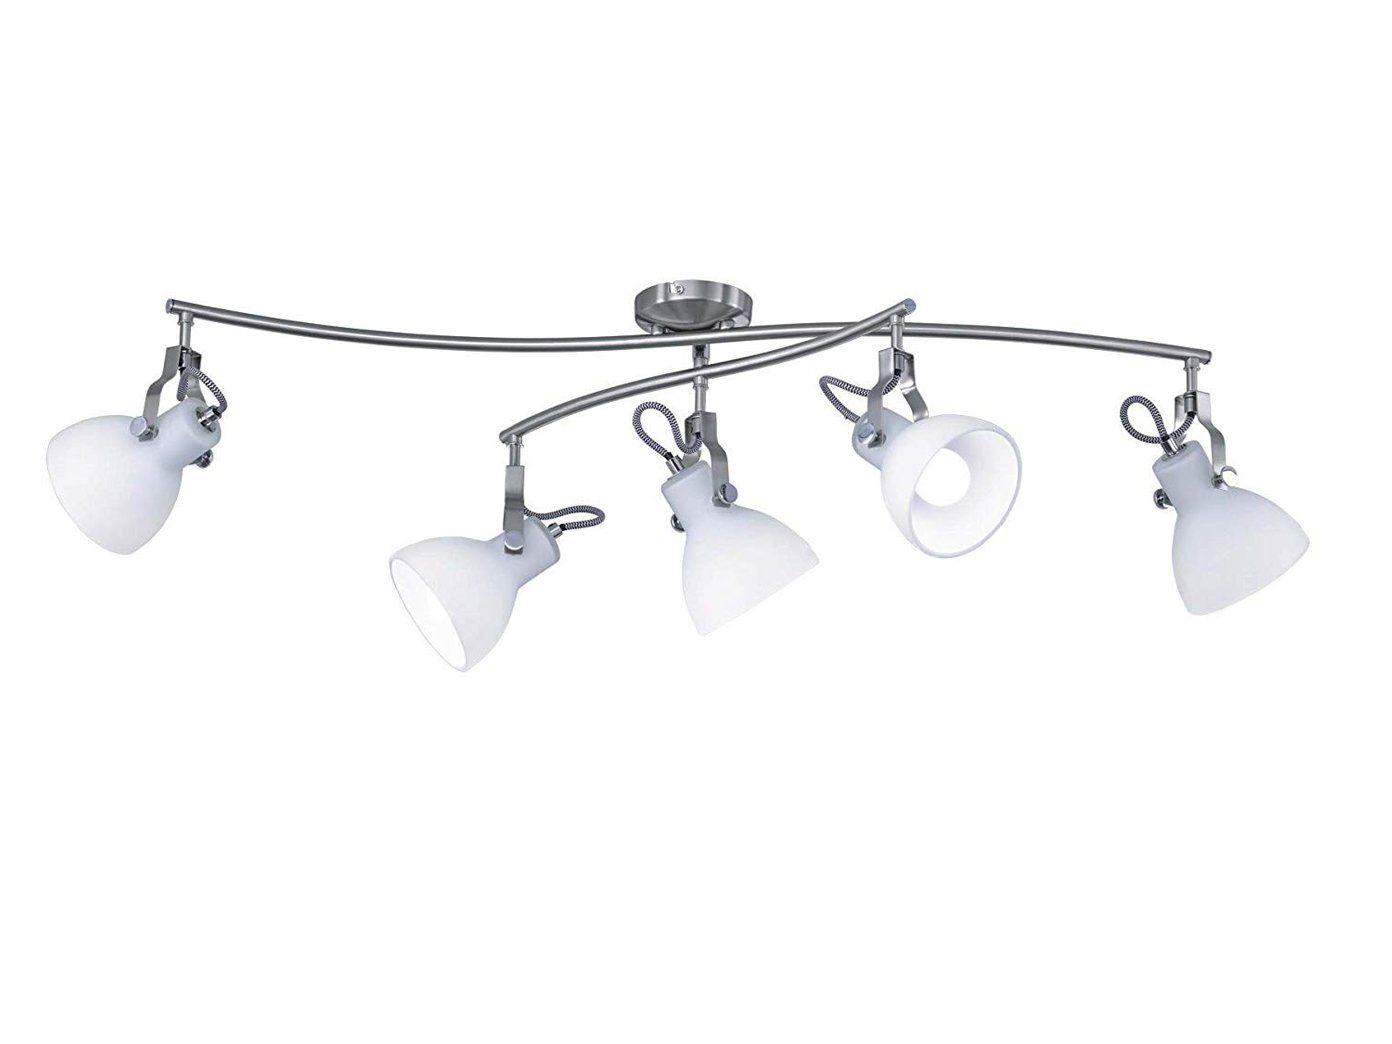 Design LED Decken Strahler Lampe Glas Schirm geschwungen Wohnraum Leuchte silber 